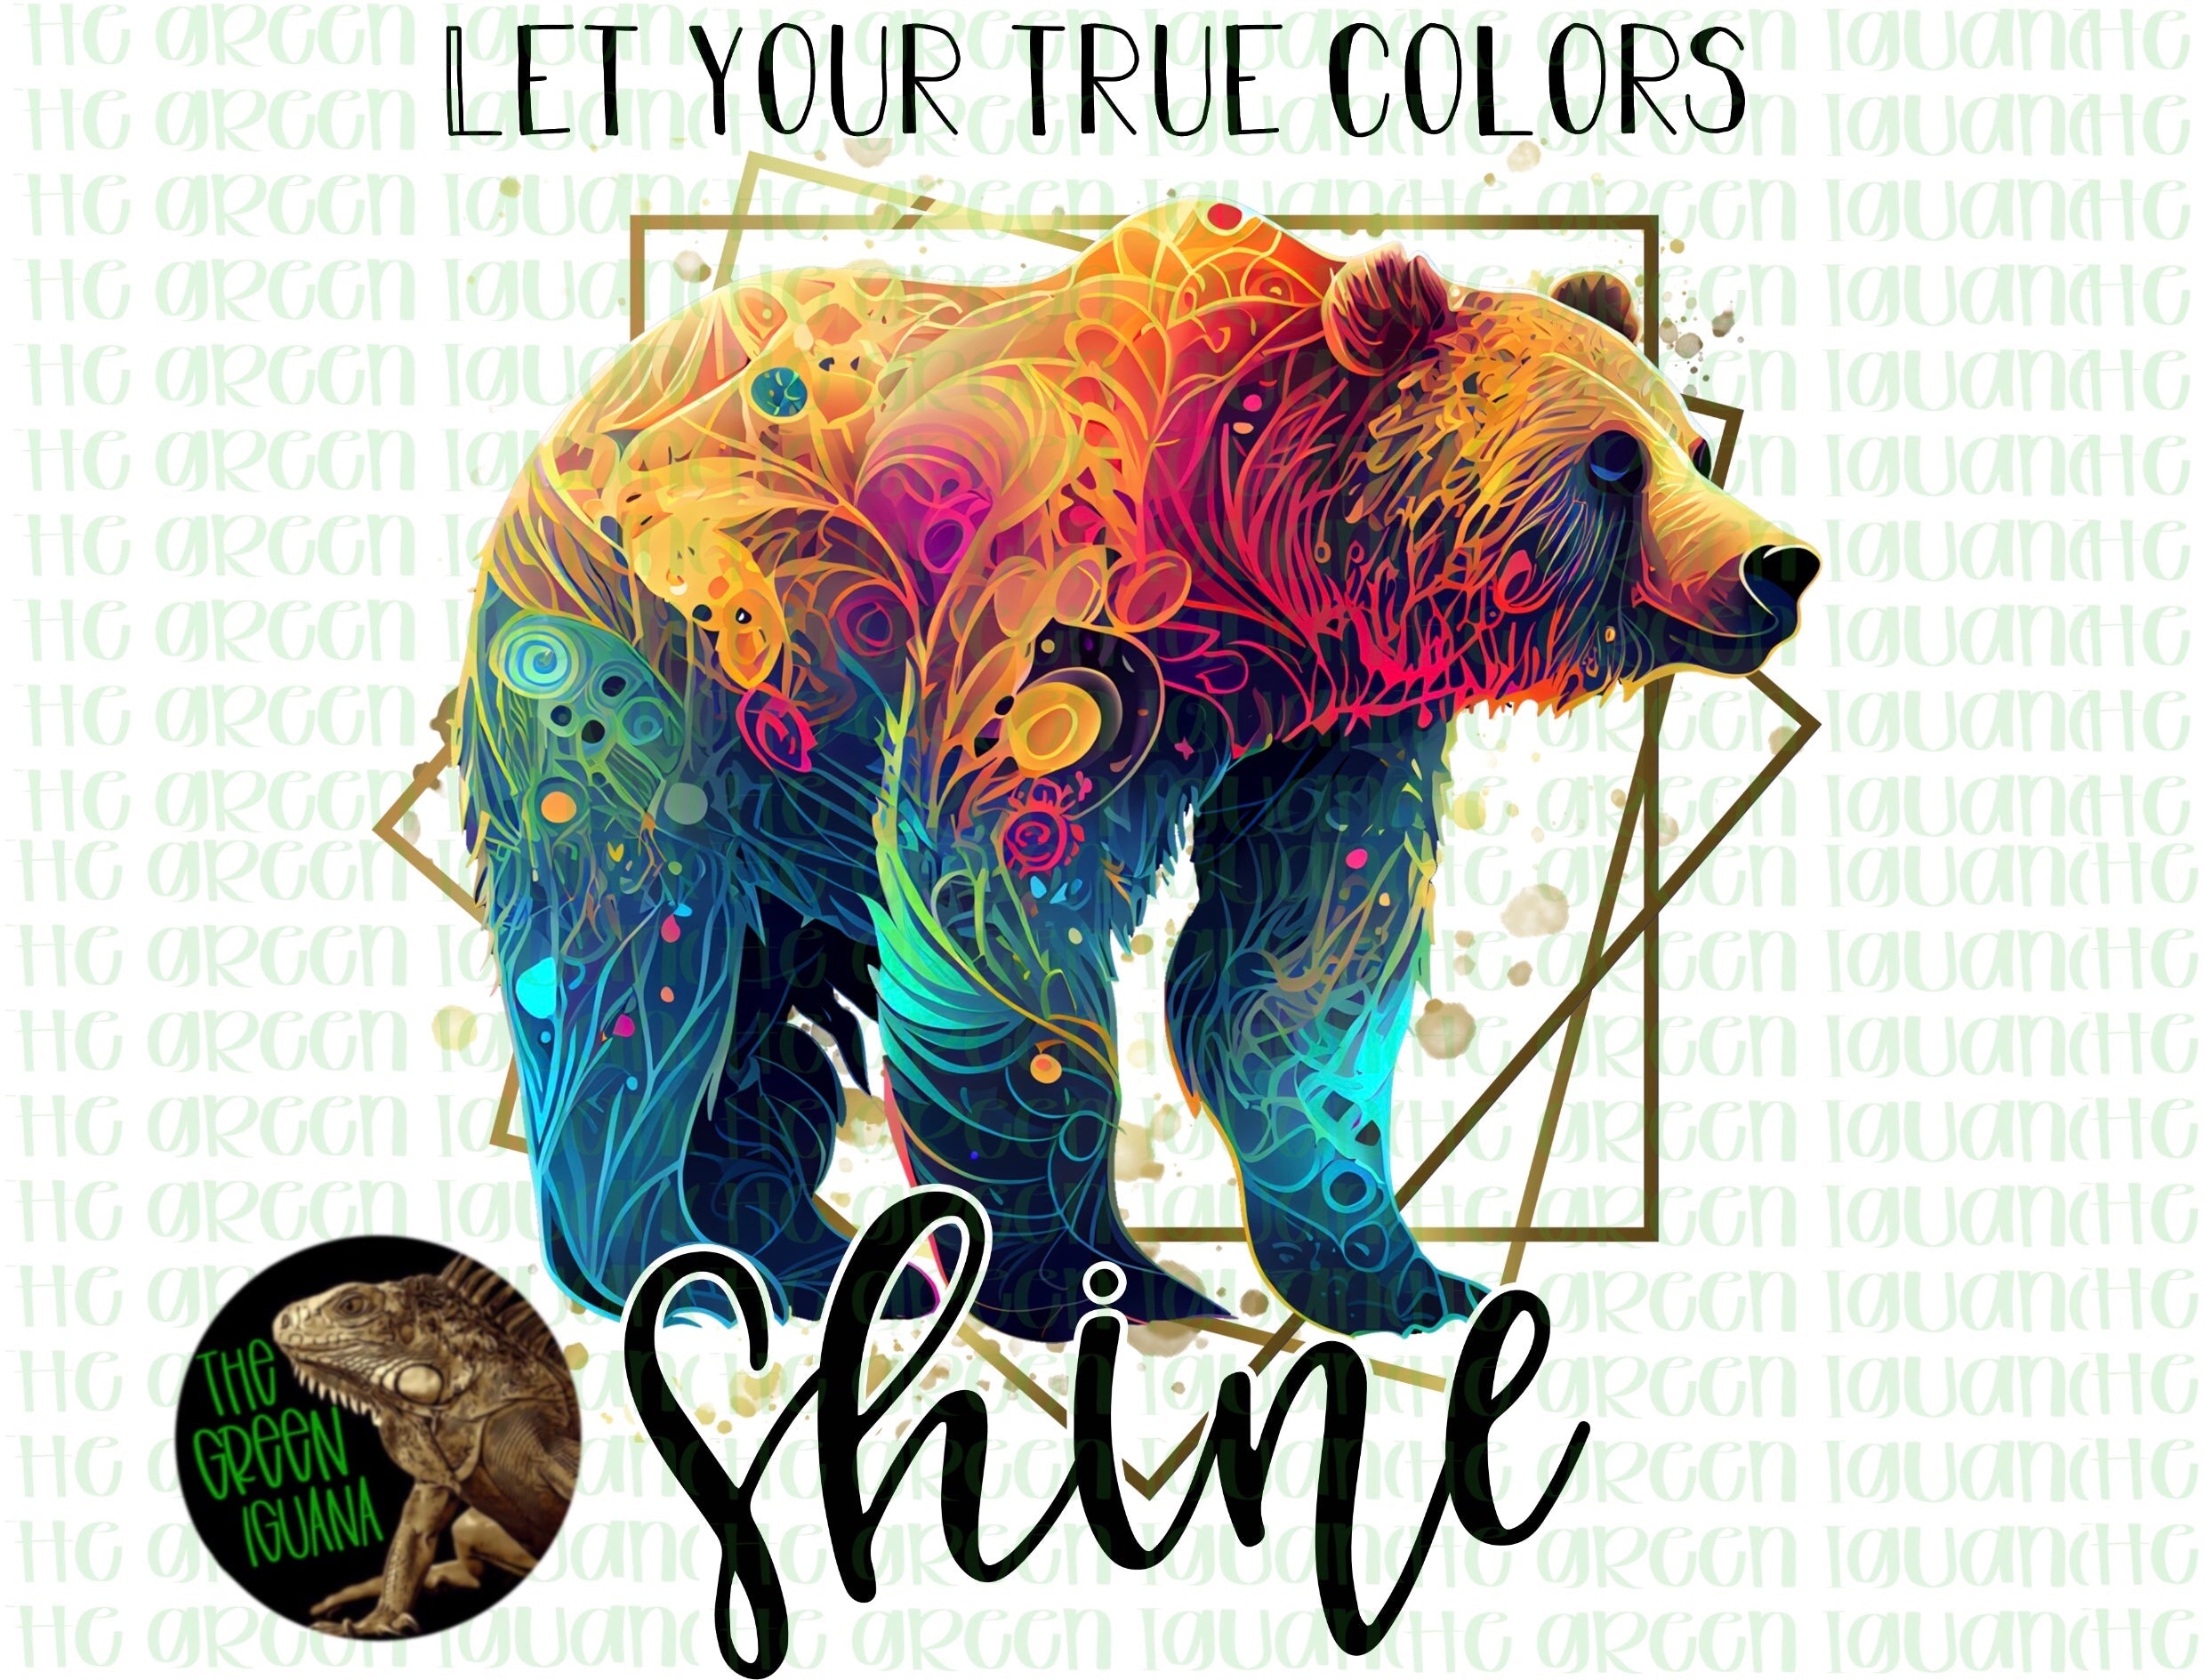 Let your true colors shine